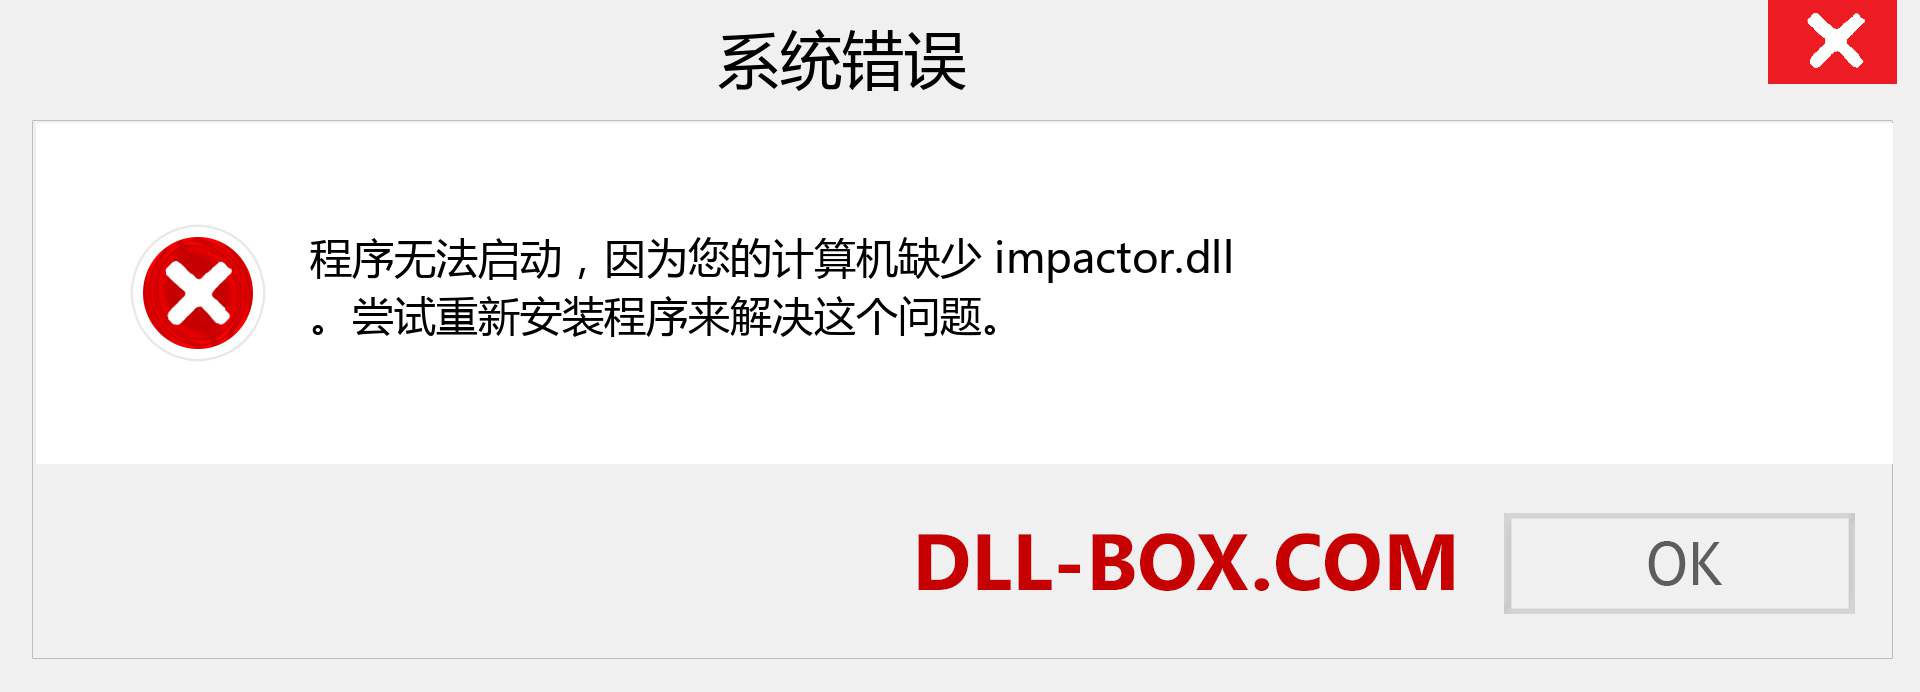 impactor.dll 文件丢失？。 适用于 Windows 7、8、10 的下载 - 修复 Windows、照片、图像上的 impactor dll 丢失错误